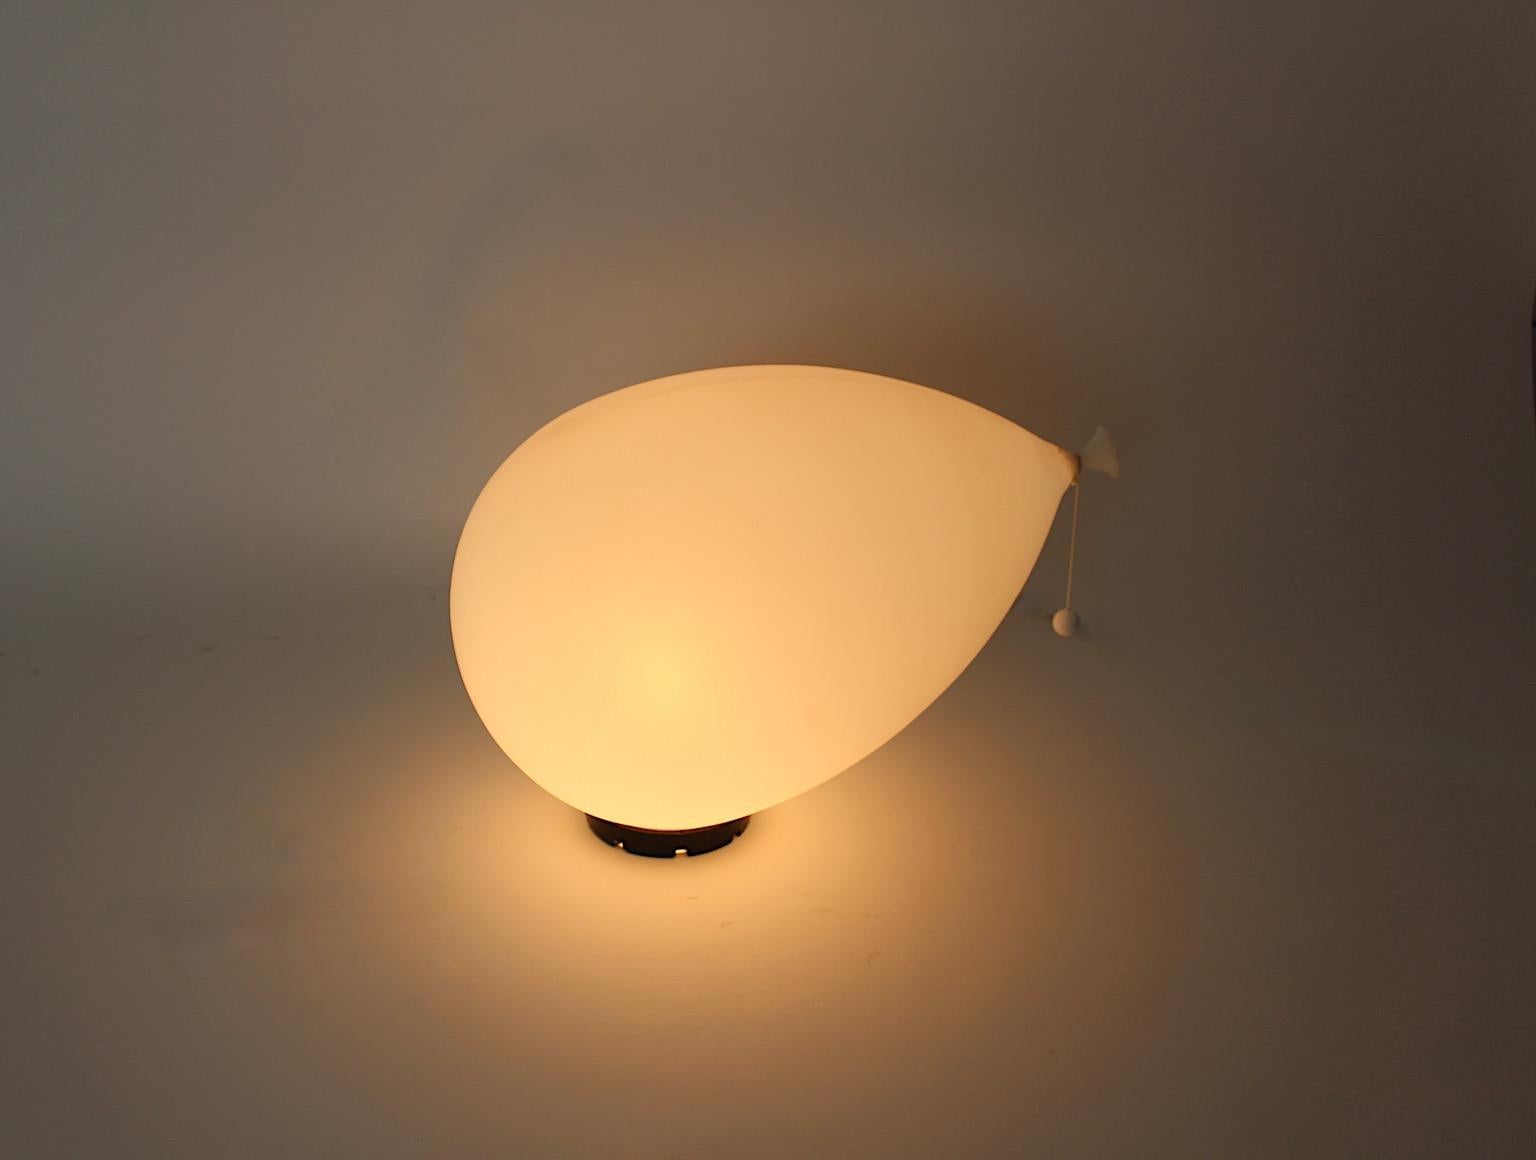 Lampe de table ou applique à encastrer à gros ballons blancs, vintage, par Yves By pour Bilumen, Italie, années 1980.
Un étonnant luminaire réalisé par Yves Christin pour Bilumen dans les années 1980 en Italie, en forme de ballon, de couleur